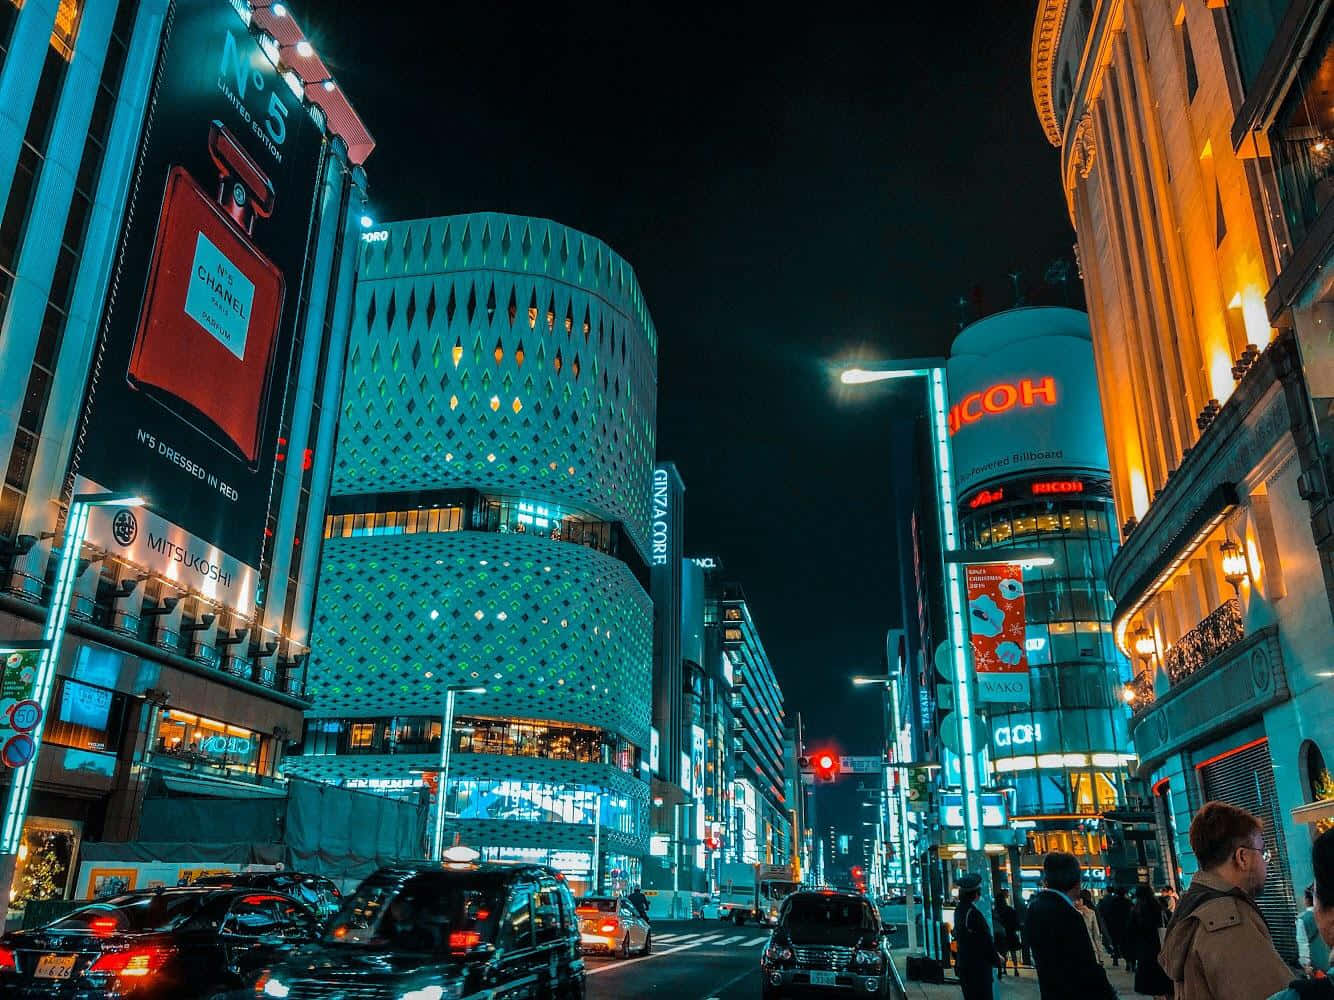 Njutav De Spektakulära Ljusen I Tokyo På Natten.